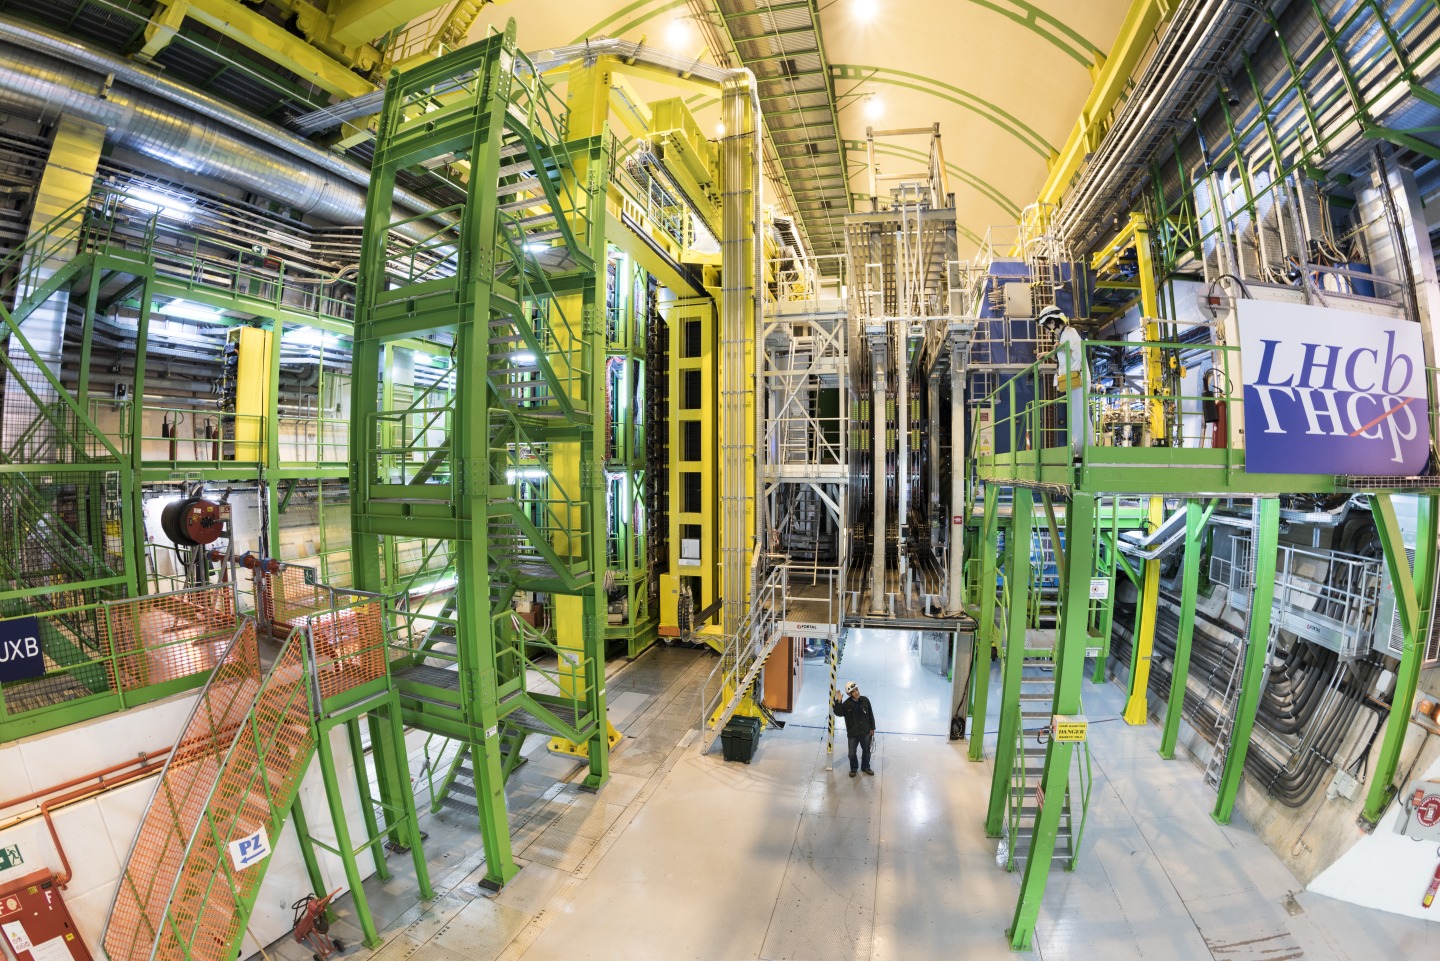 Участники эксперимента LHCb в процессе подготовки коллайдера к испытанию